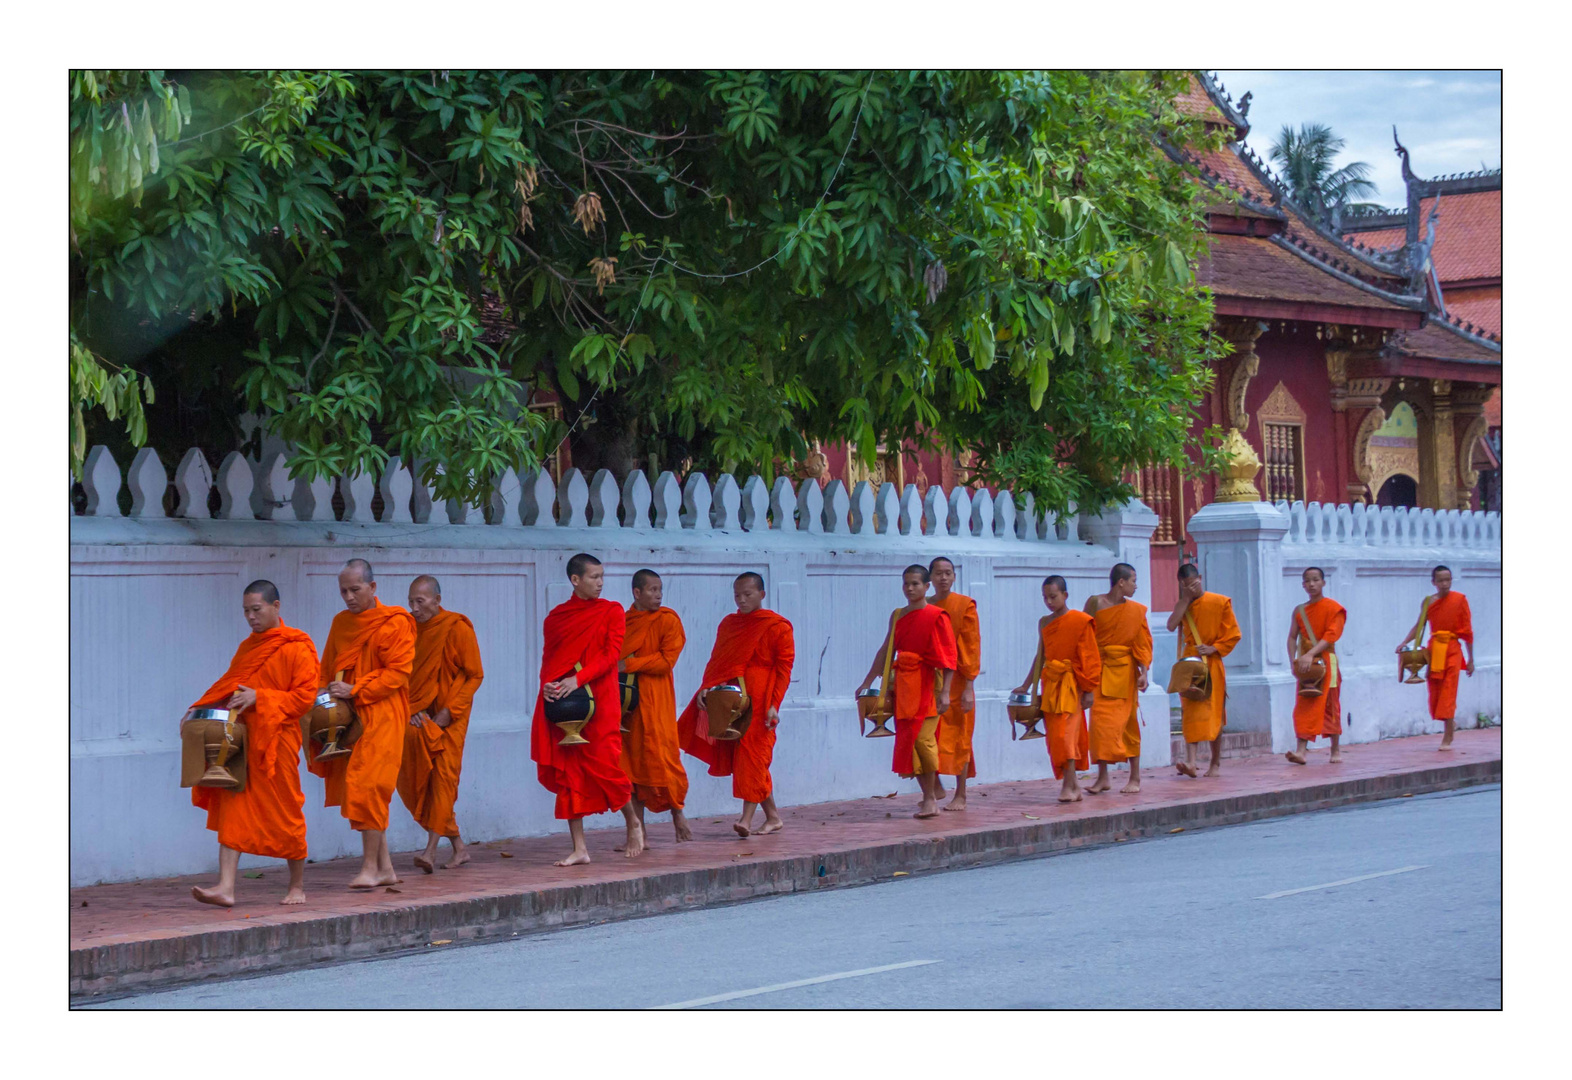 Almosengang der Mönche in Luang Prabang